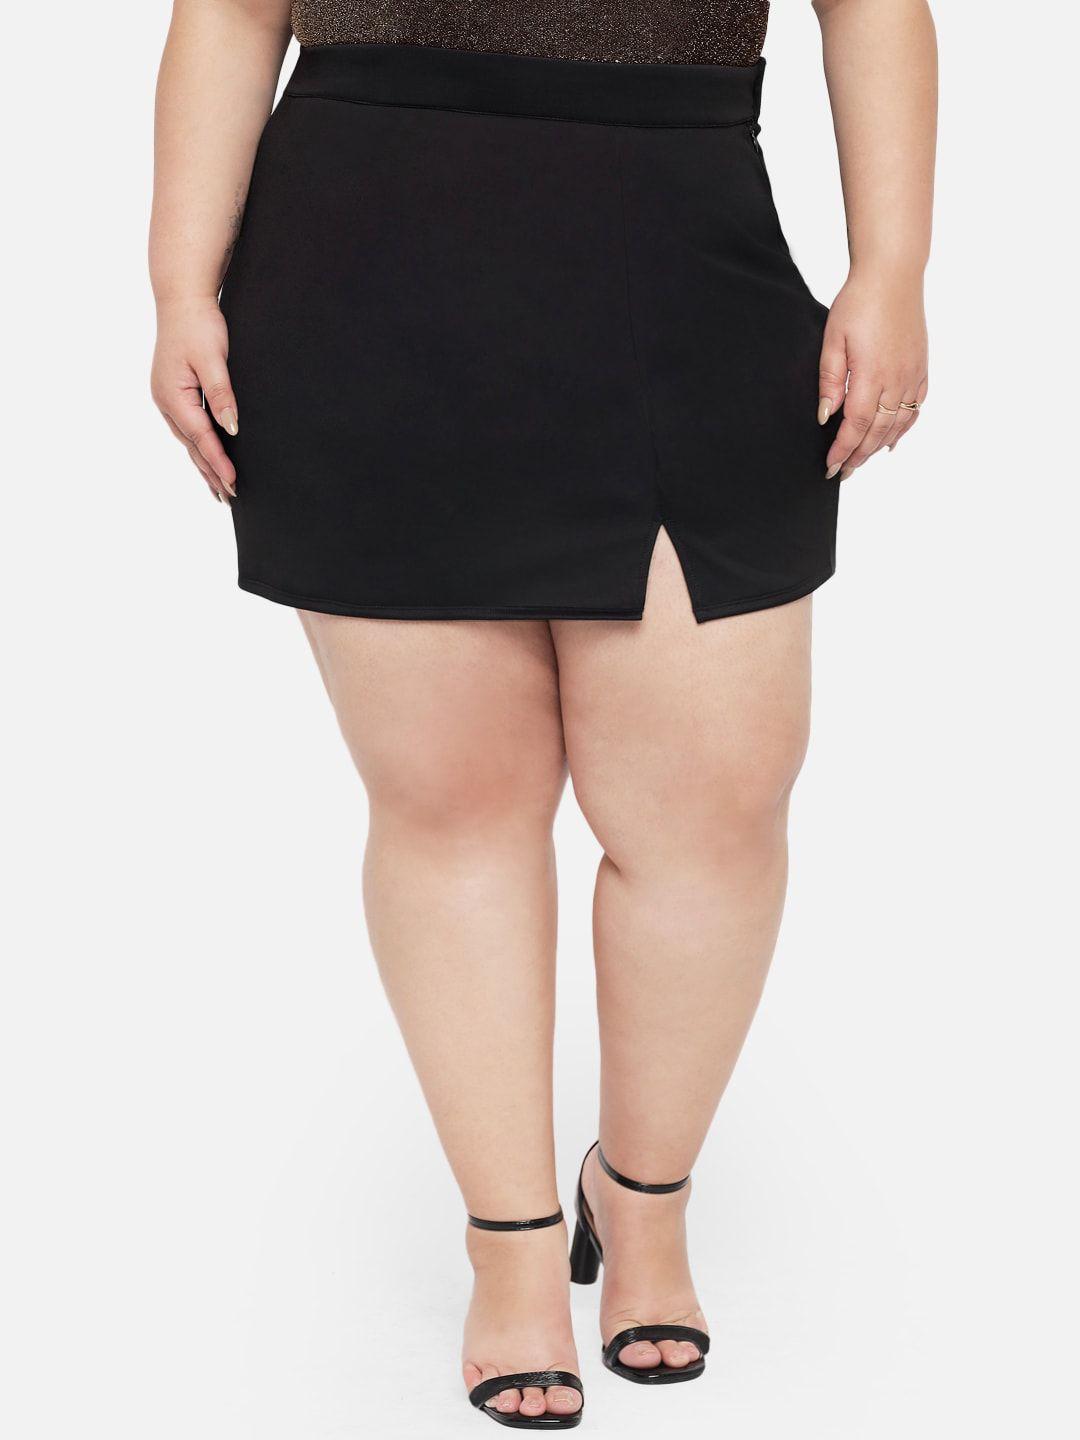 wild U Plus Size Women Black Solid Mini Pencil Skirt